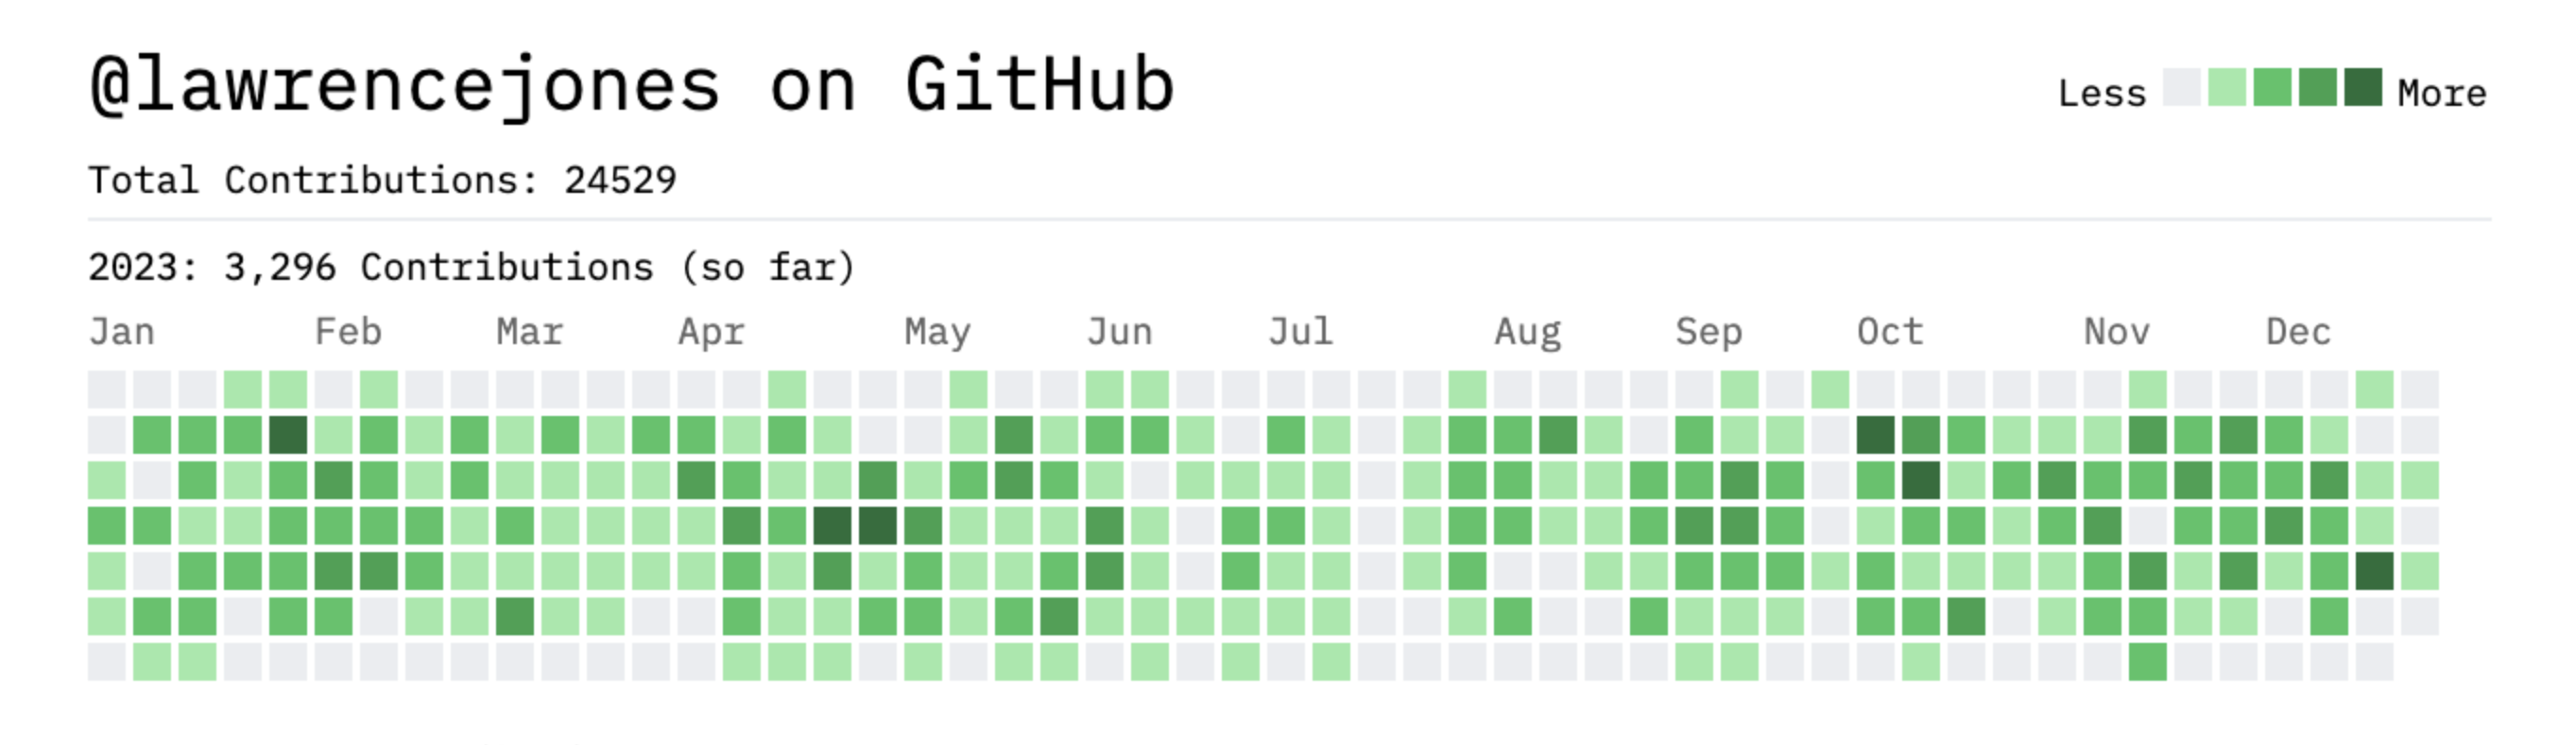 GitHub contribution graph for 2023